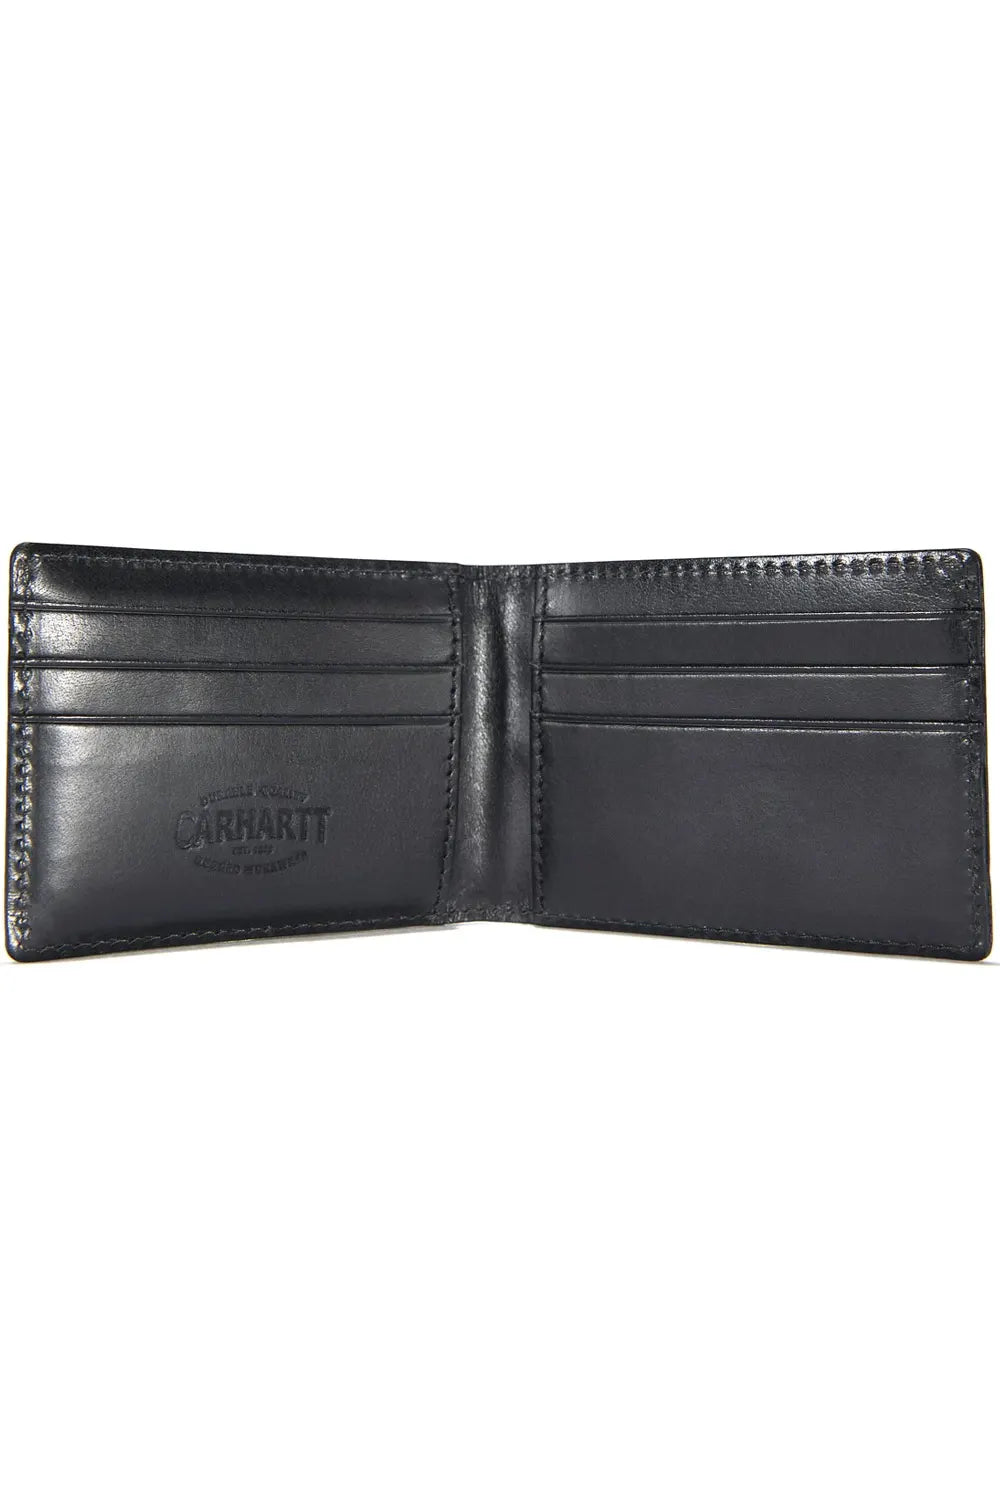 Carhartt B0000204-001 Rough Cut Bi-Fold Wallet in Black inside open